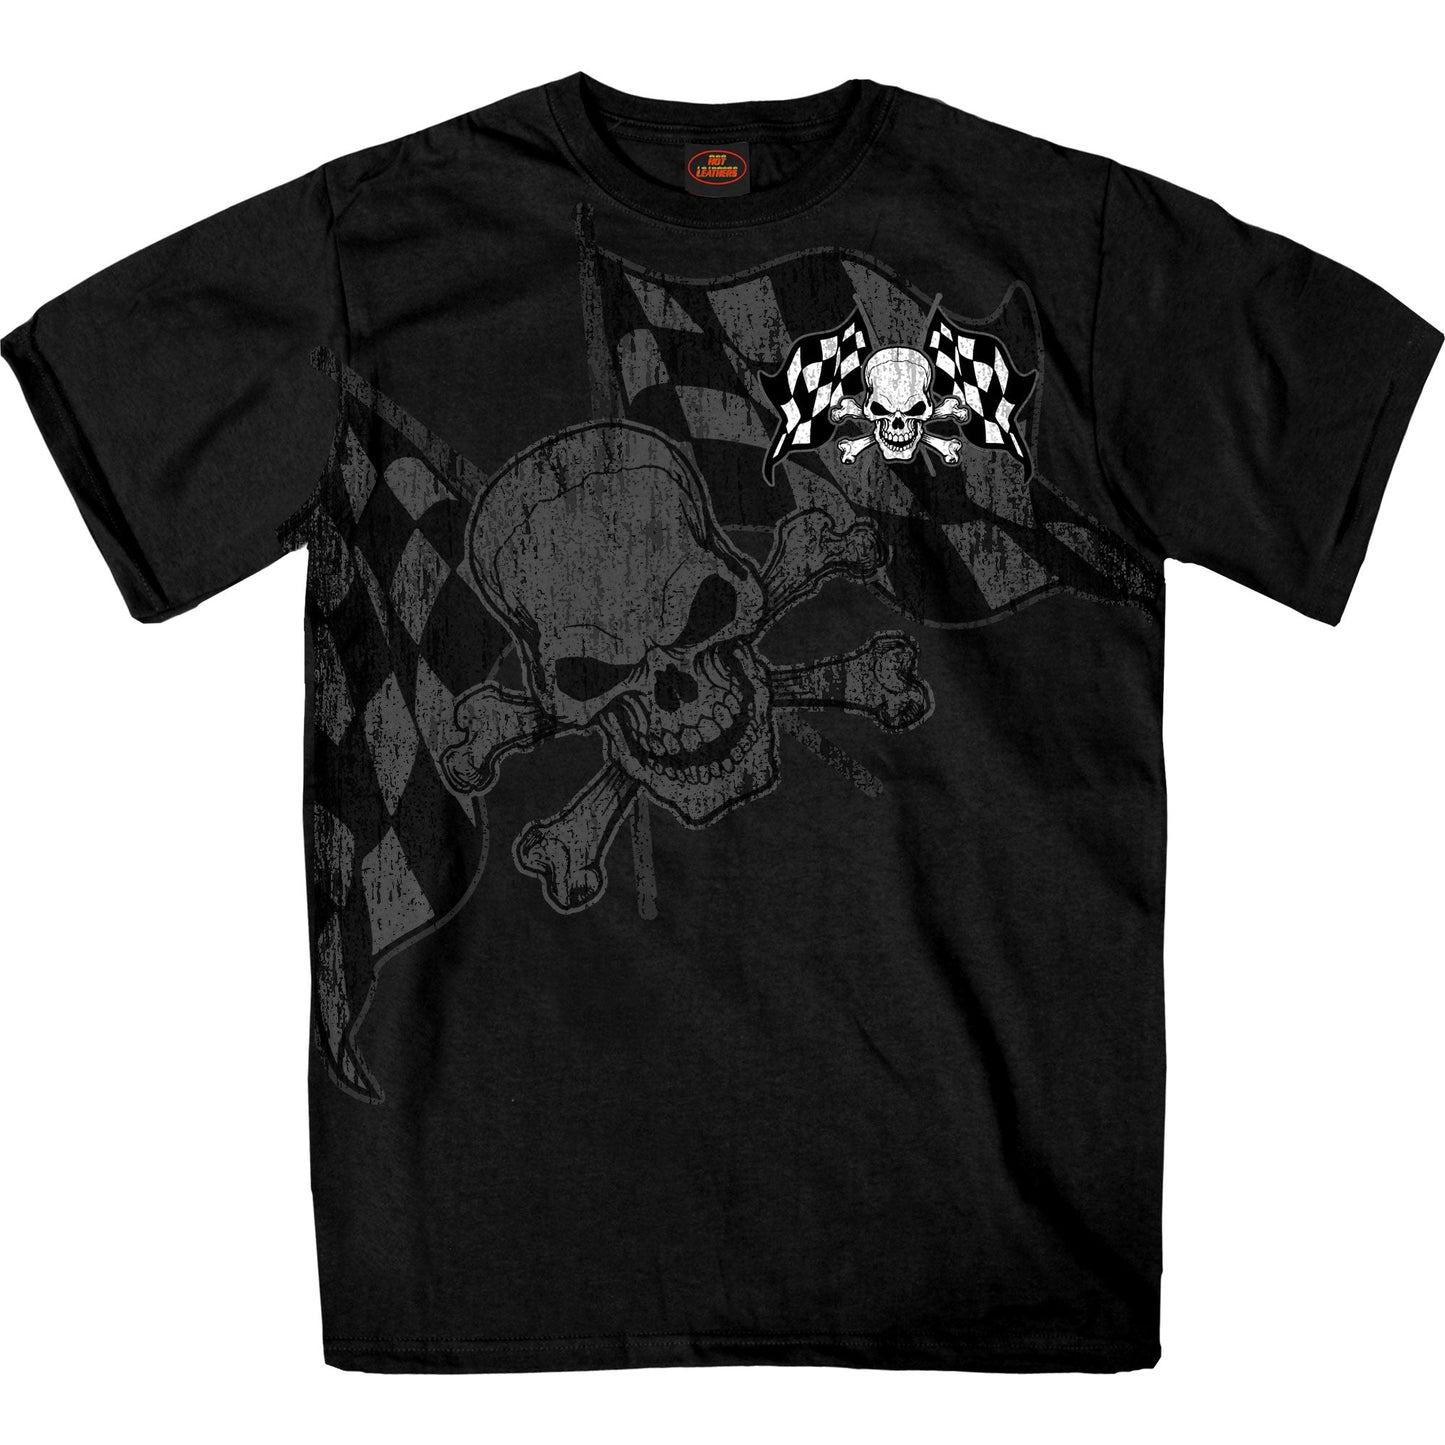 Checkered Flag Skull T-shirt